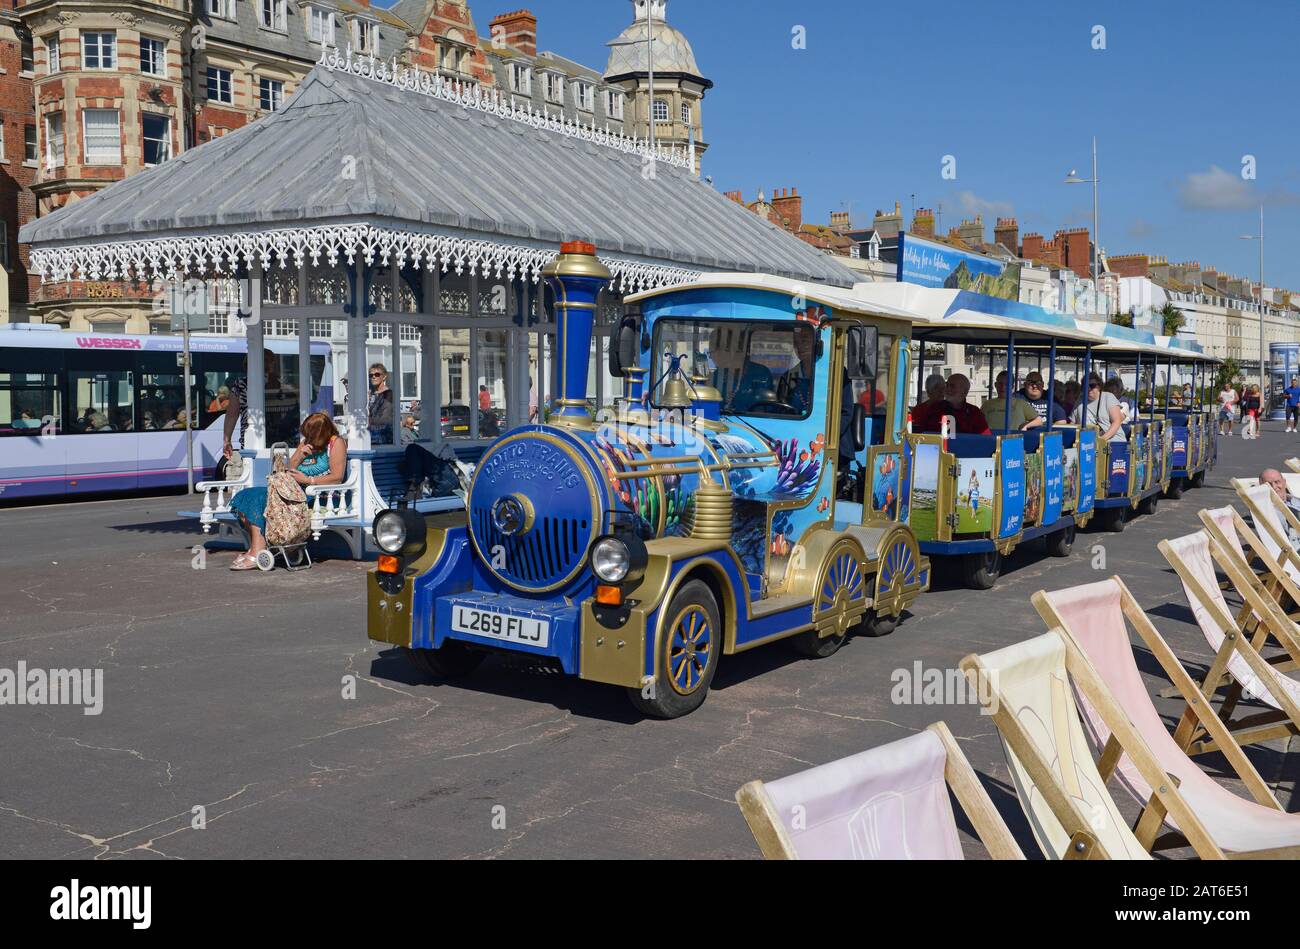 Un mini-train touristique coloré longe le front de mer à Weymouth, Dorset, Royaume-Uni Banque D'Images